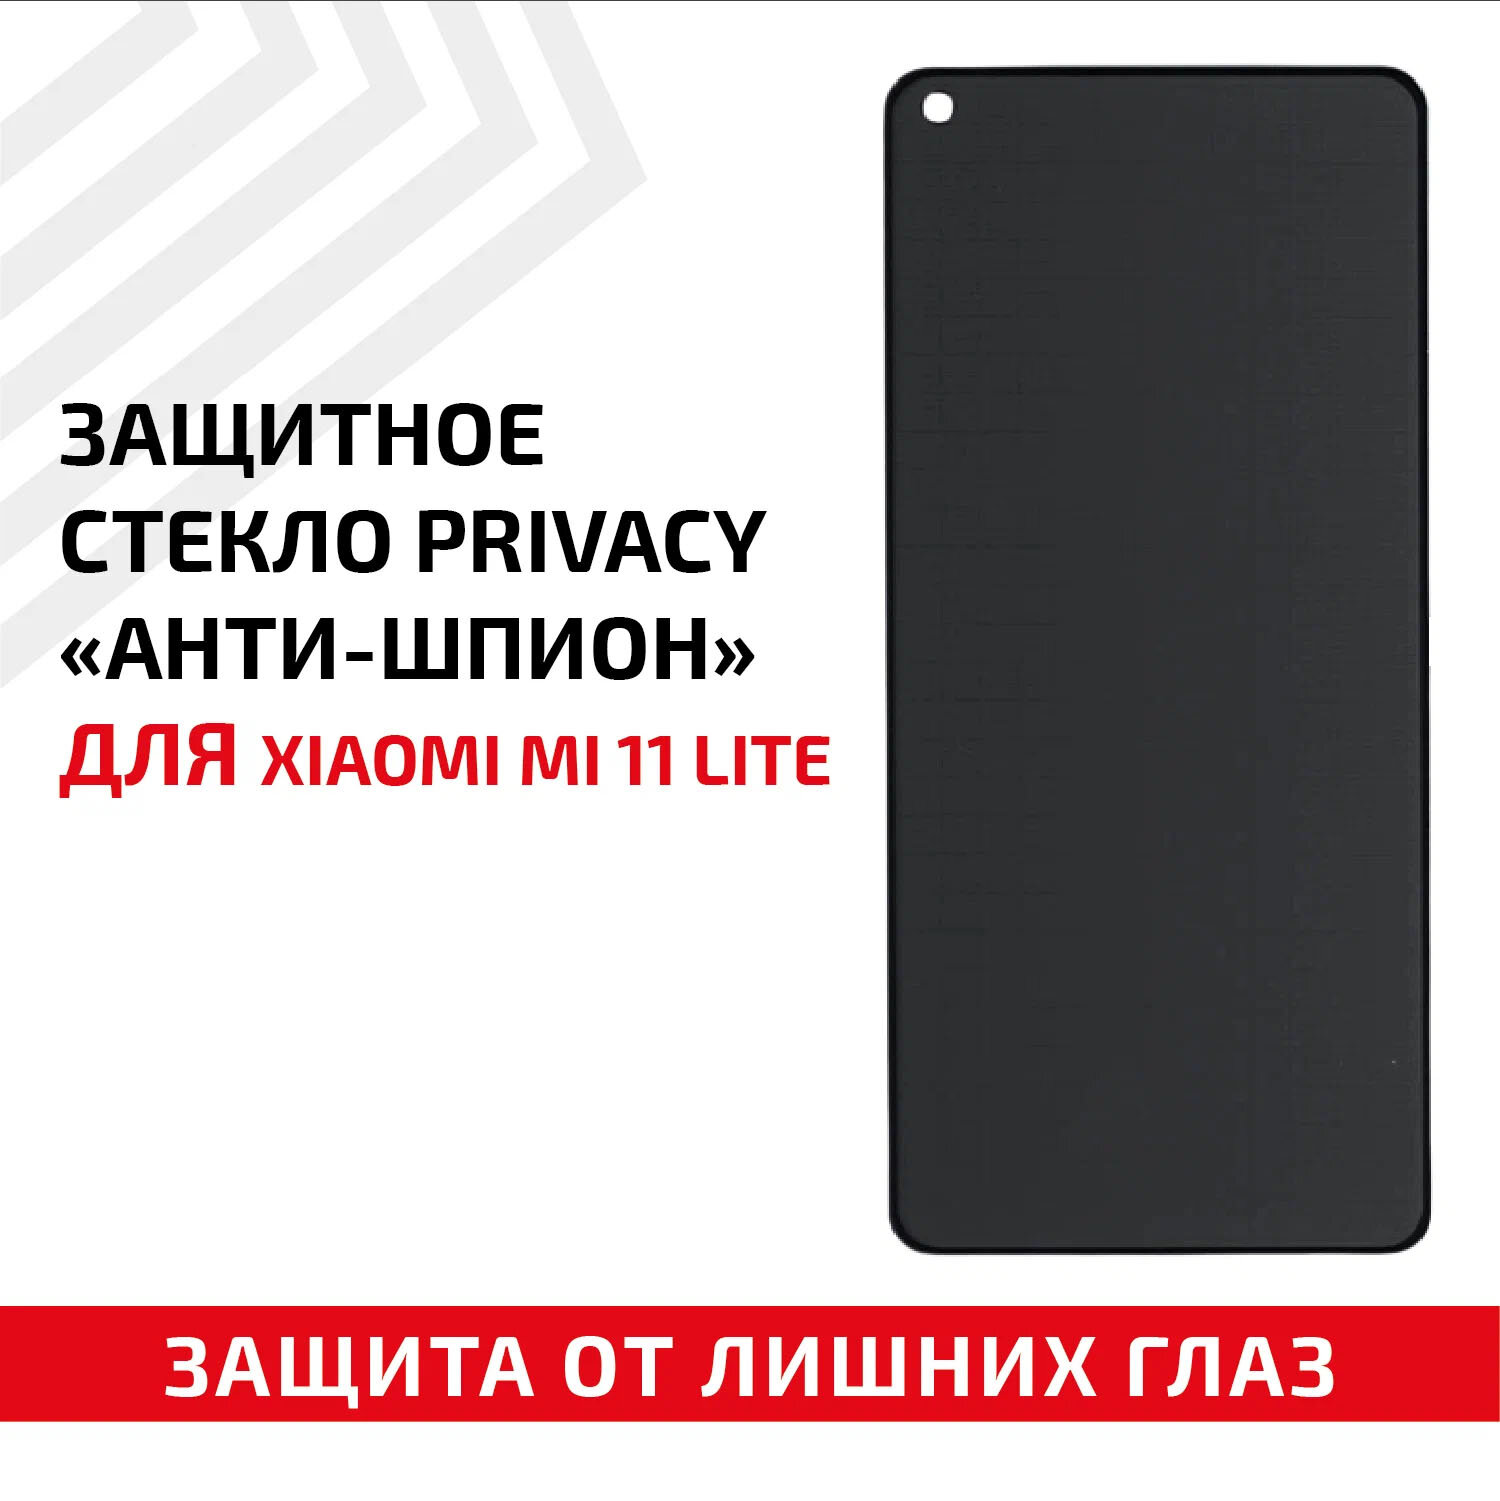 Защитное стекло Privacy "Анти-шпион" для мобильного телефона (смартфона) Xiaomi Mi 11 Lite черное